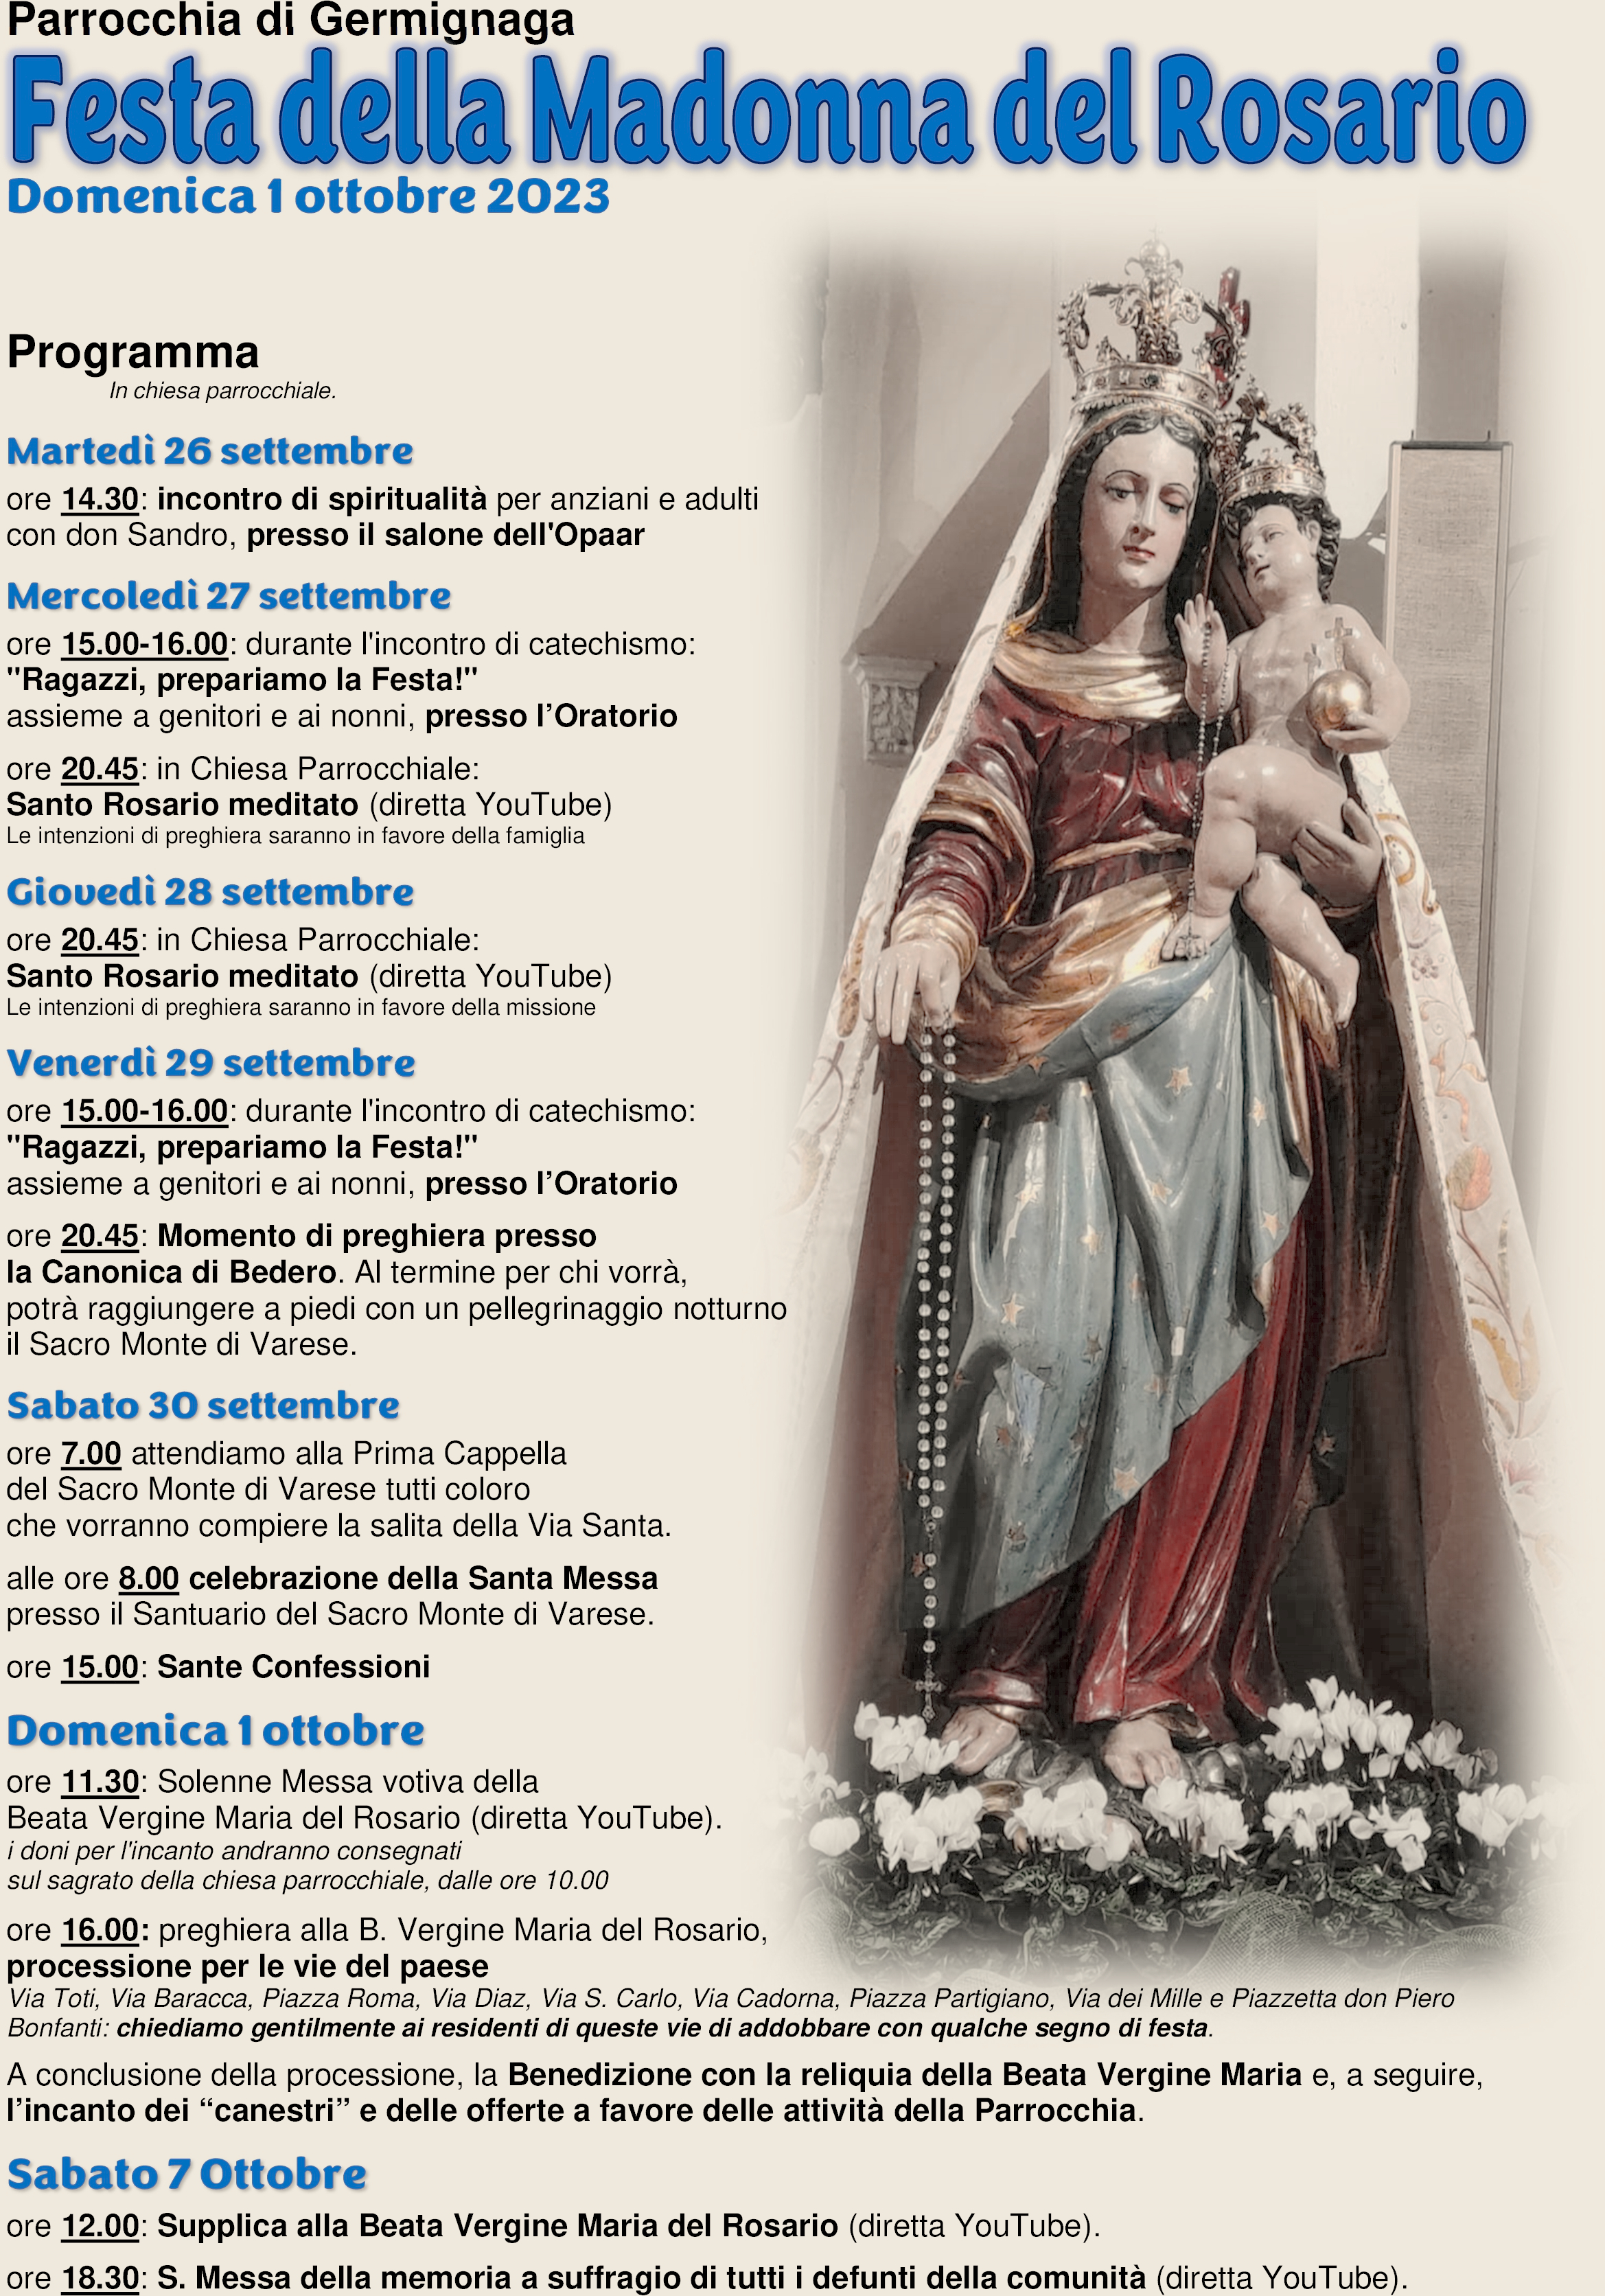 202231001 Madonna del Rosario